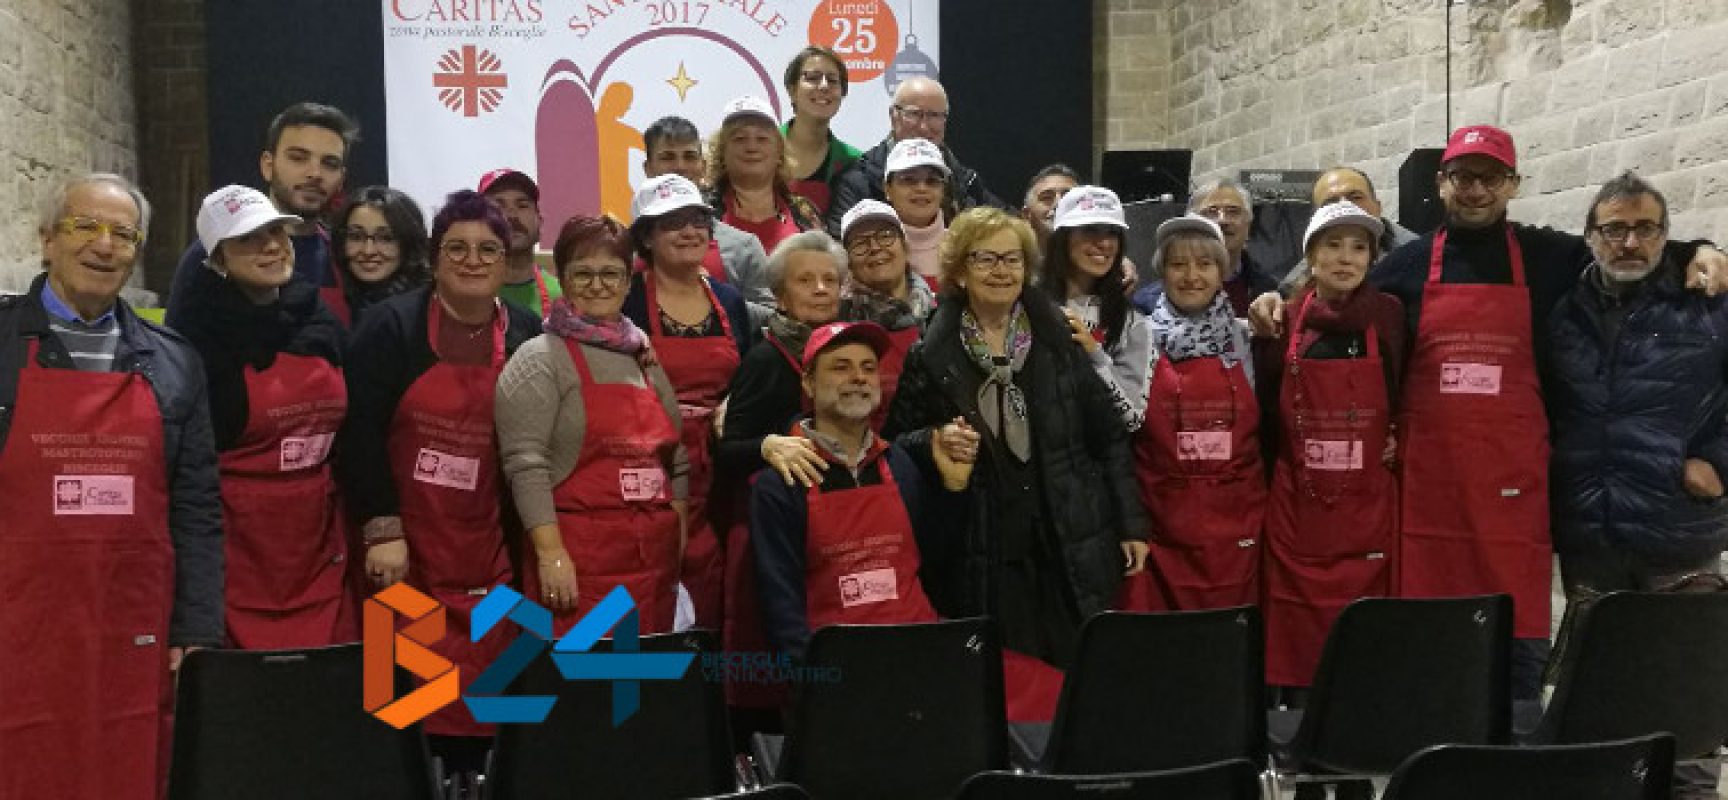 La Caritas rinnova l’invito a partecipare come volontari al tradizionale pranzo di Natale